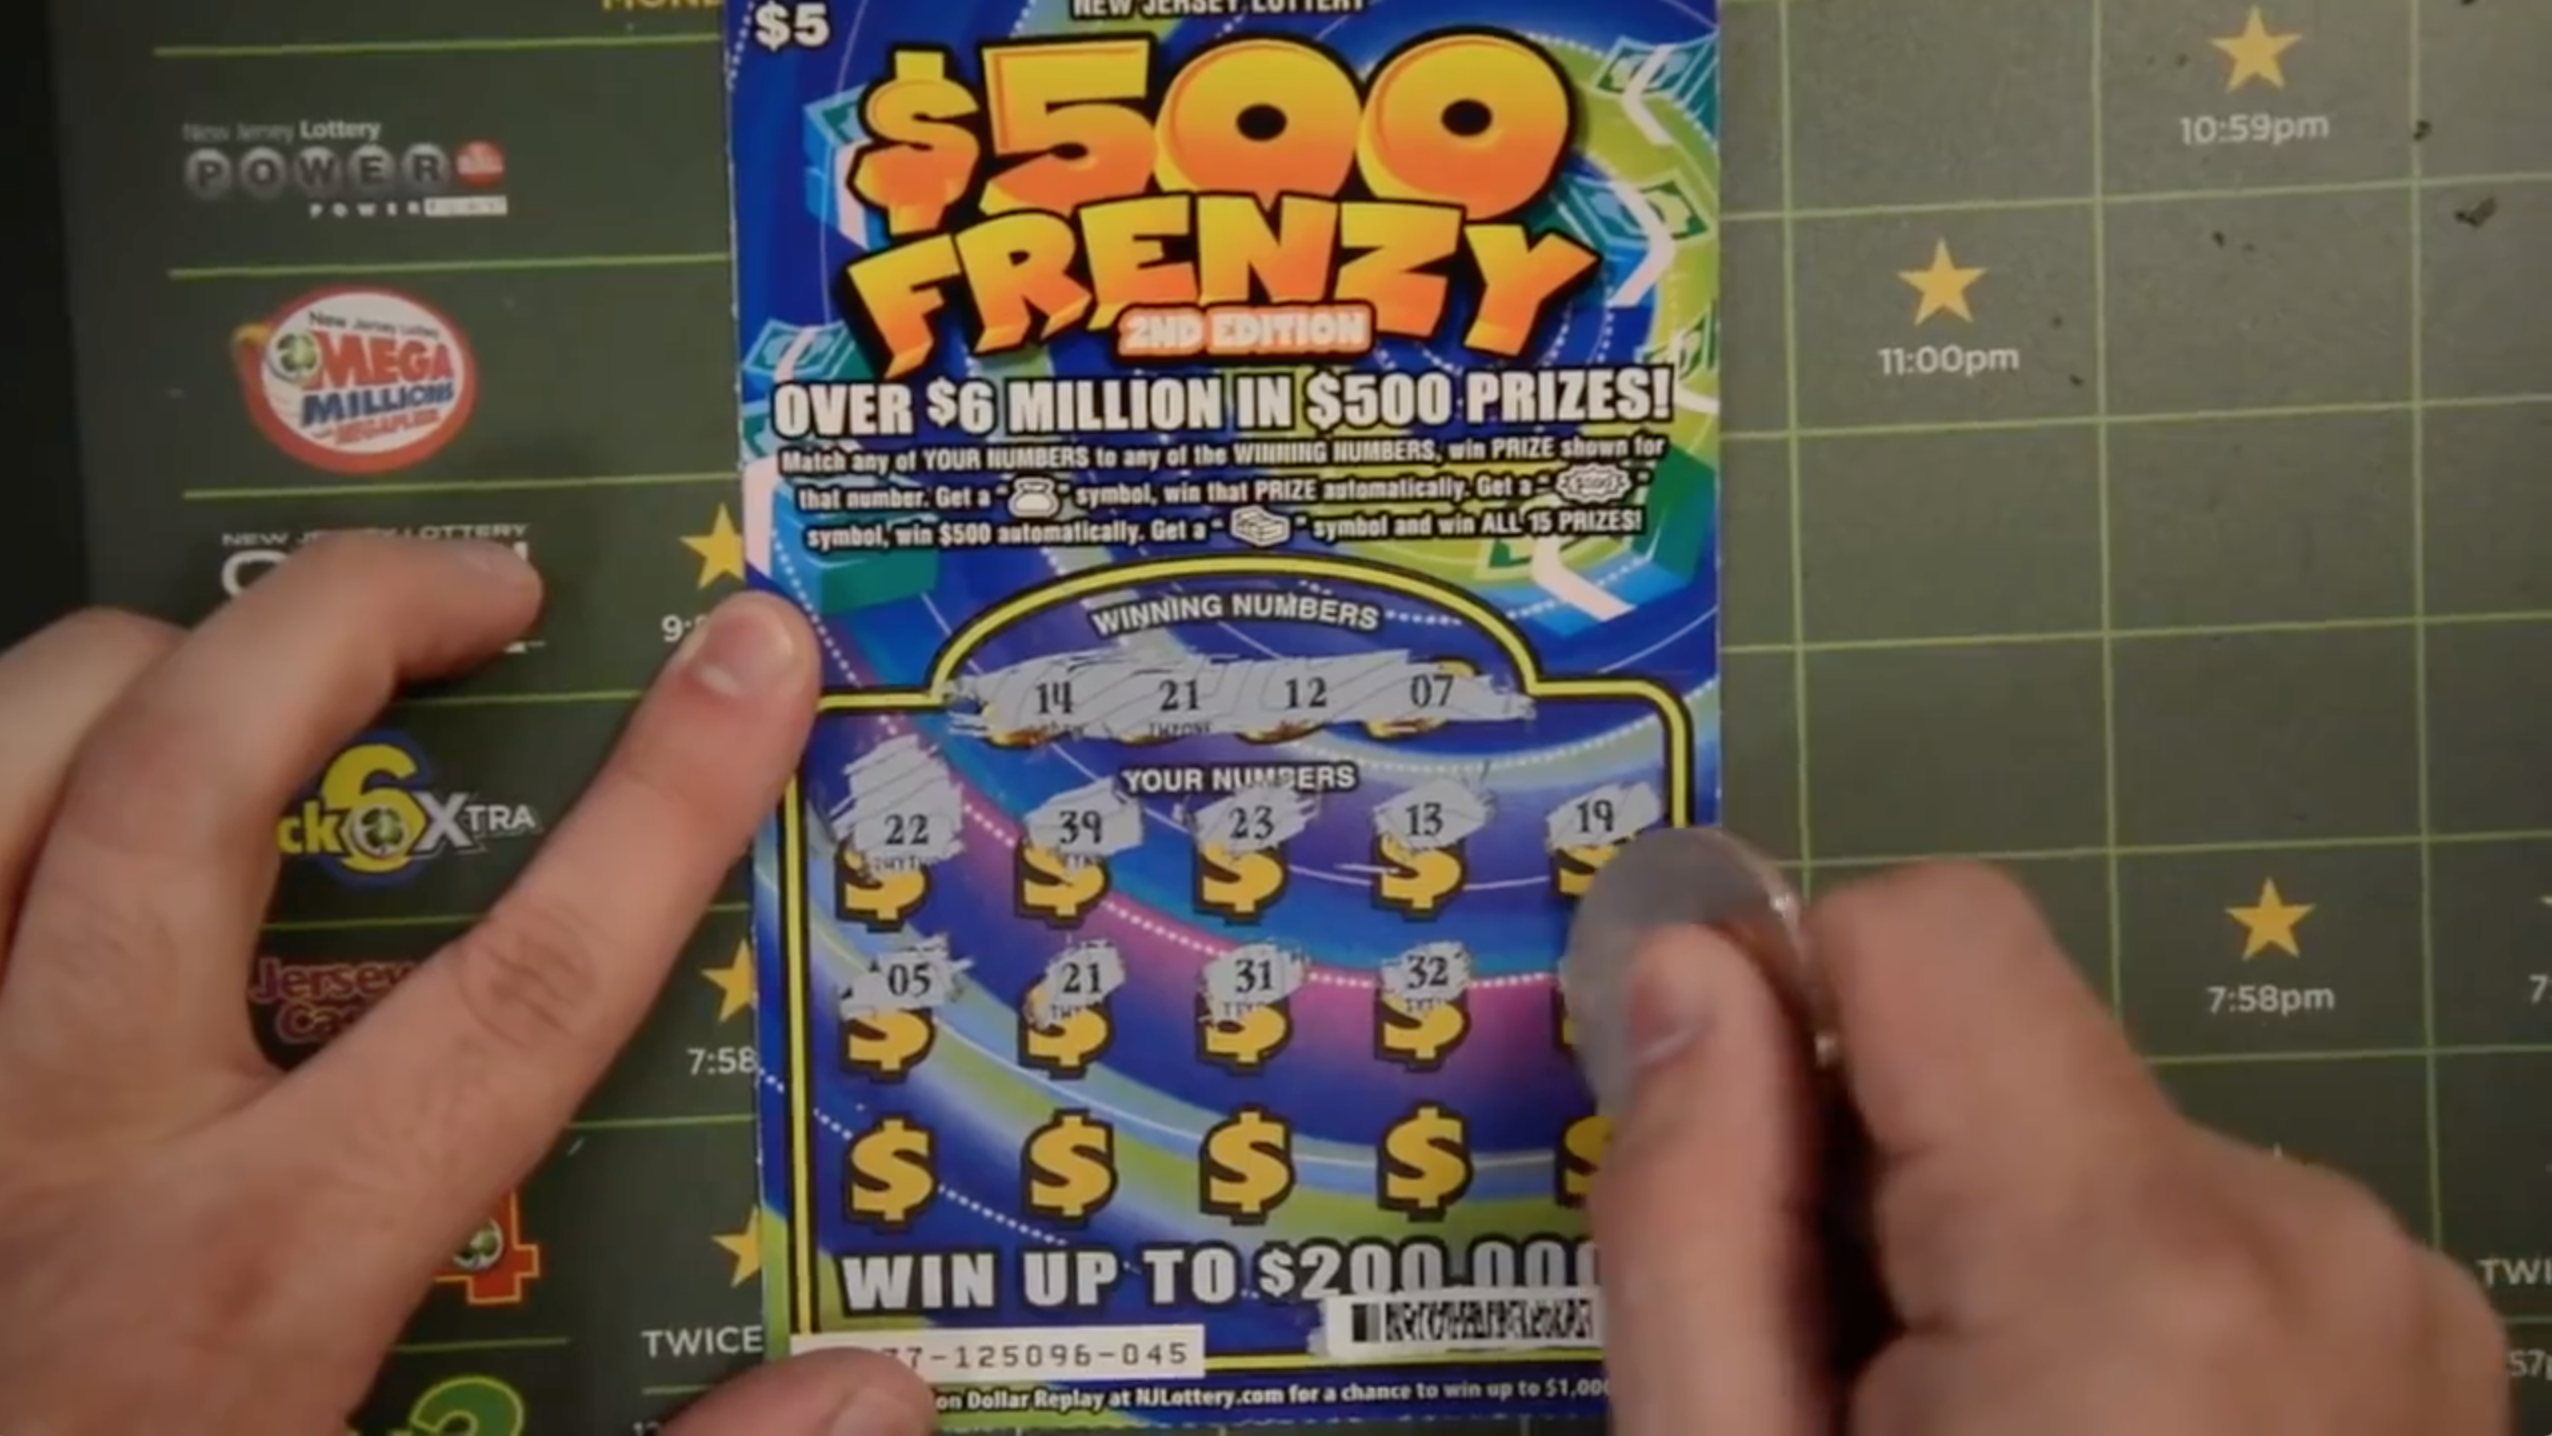 Un homme se filme entrain de gratter un ticket et gagne 200 000 dollars